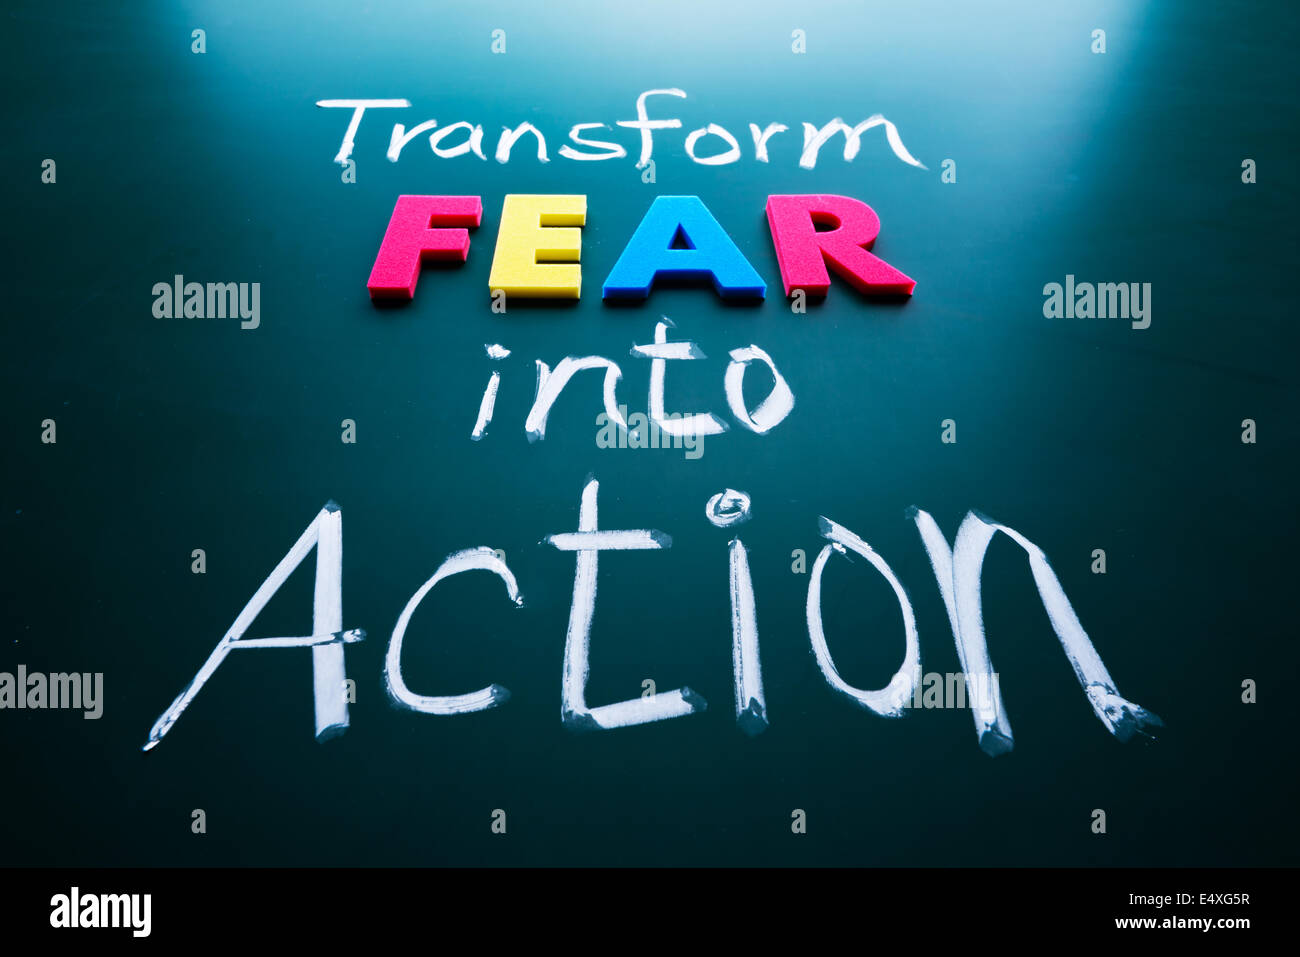 Transform fear into action concept Stock Photo